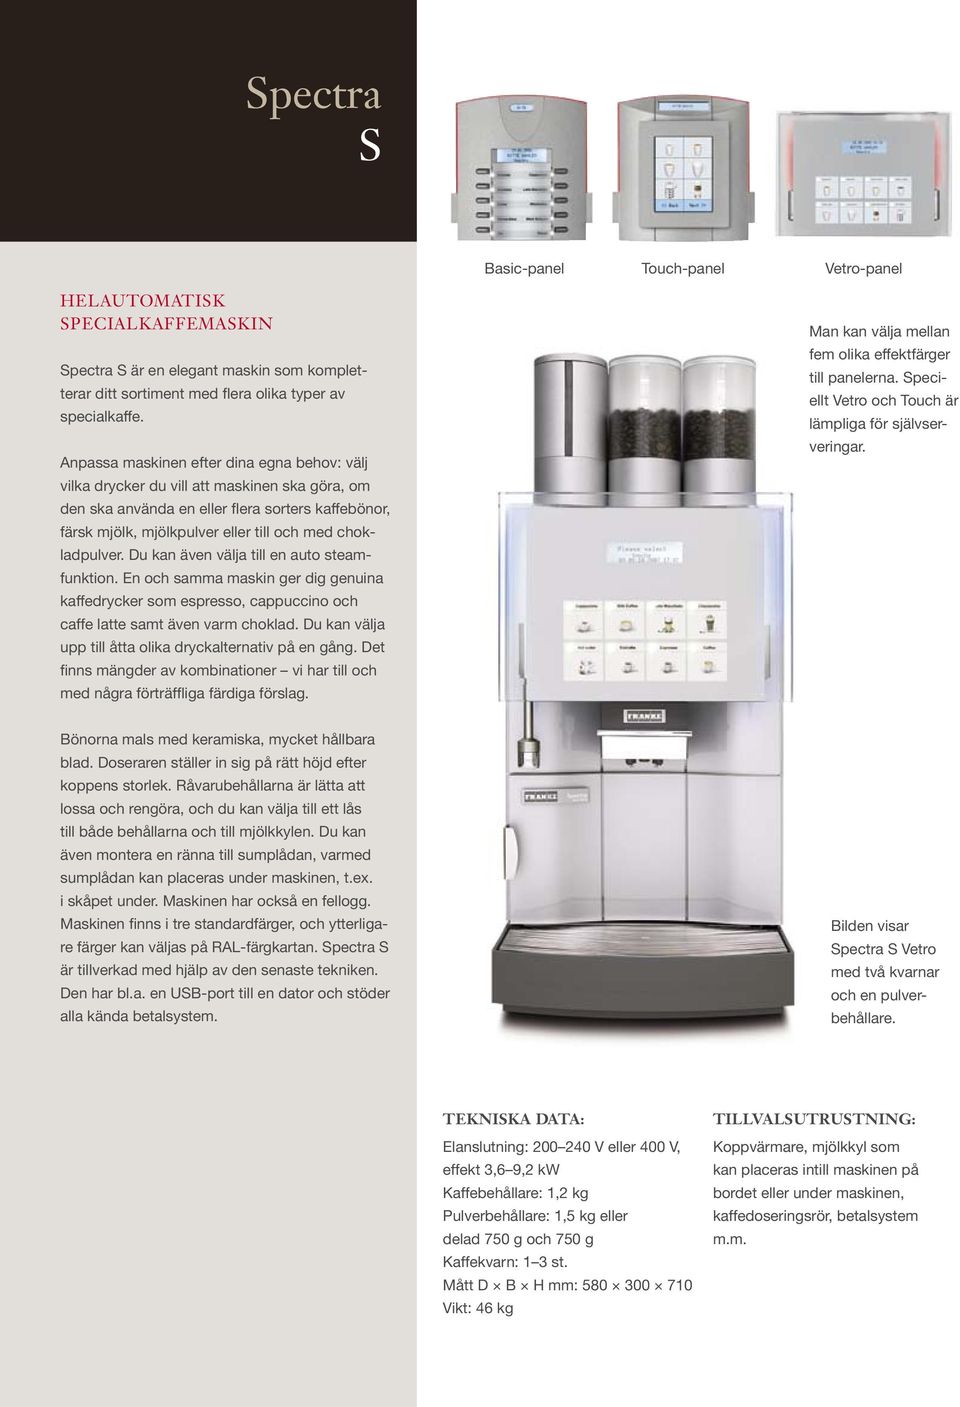 chokladpulver. Du kan även välja till en auto steamfunktion. En och samma maskin ger dig genuina kaffedrycker som espresso, cappuccino och caffe latte samt även varm choklad.